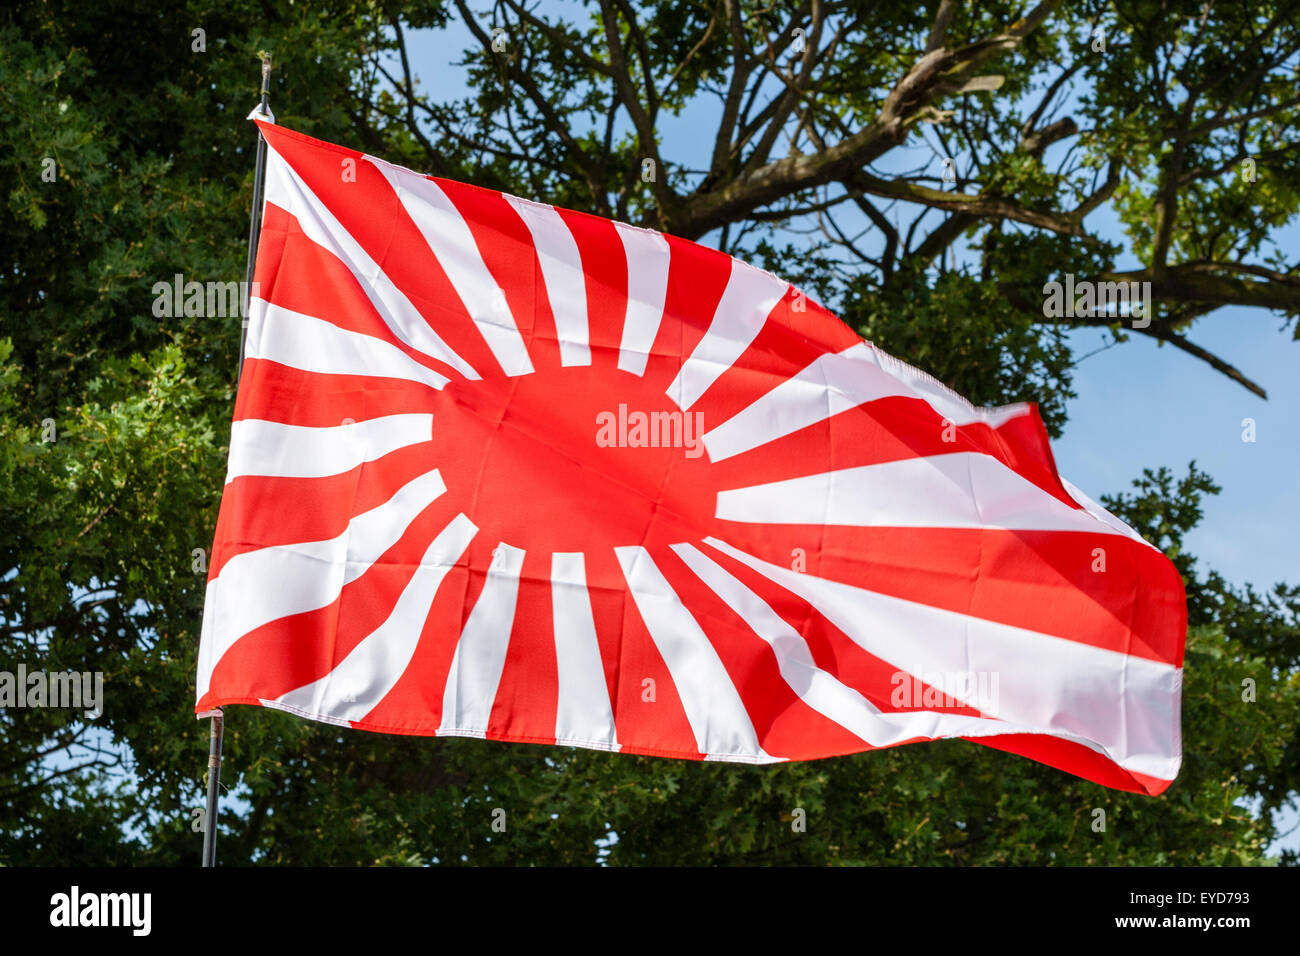 Japanische Rising Sun Flagge, Kyokujitsu-ki, Nisshōki oder Hinomaru, durch das Militär im Zweiten Weltkrieg, Zweige und Blätter von Bäumen im Hintergrund verwendet. Stockfoto